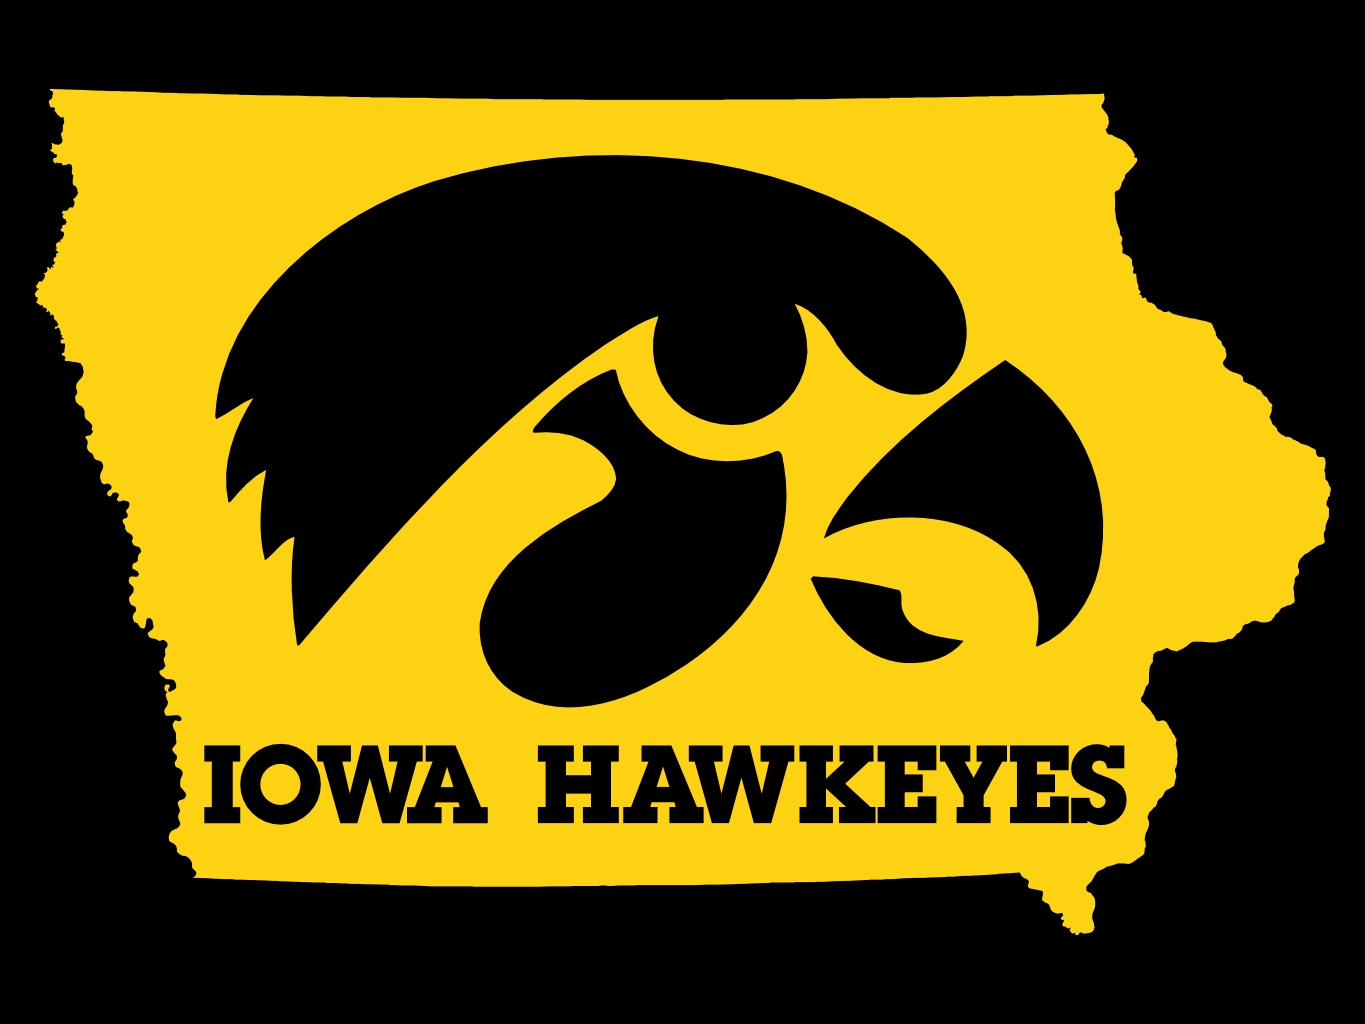 Buy Iowa Hawkeyes Tickets Today